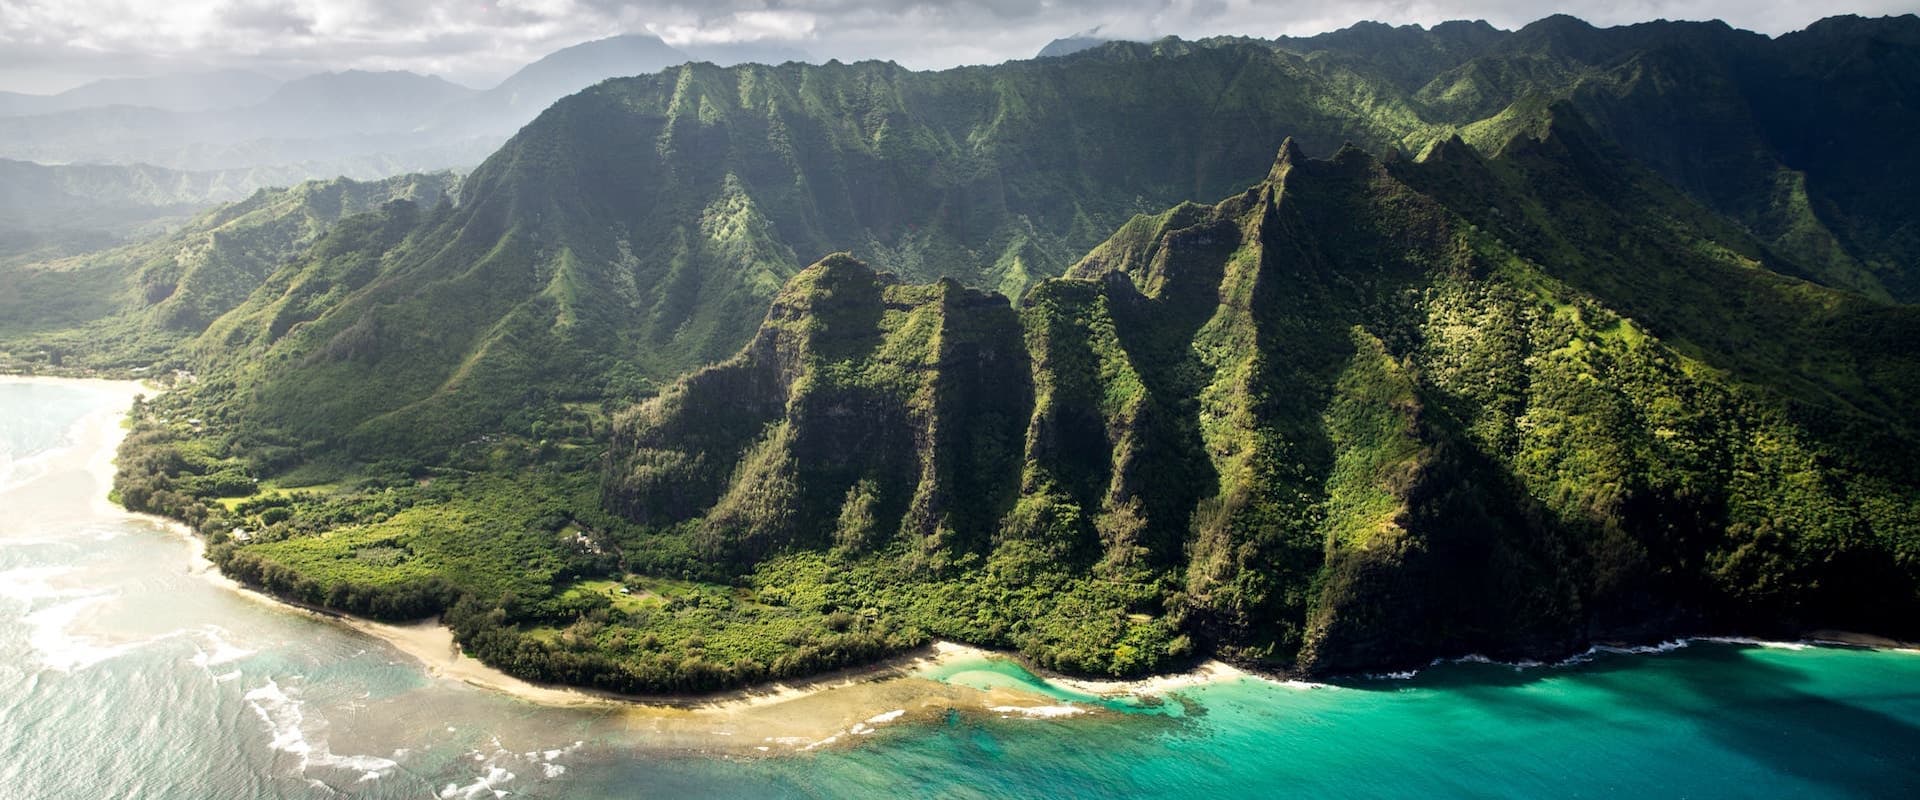 Gerätetauchen auf Hawaii